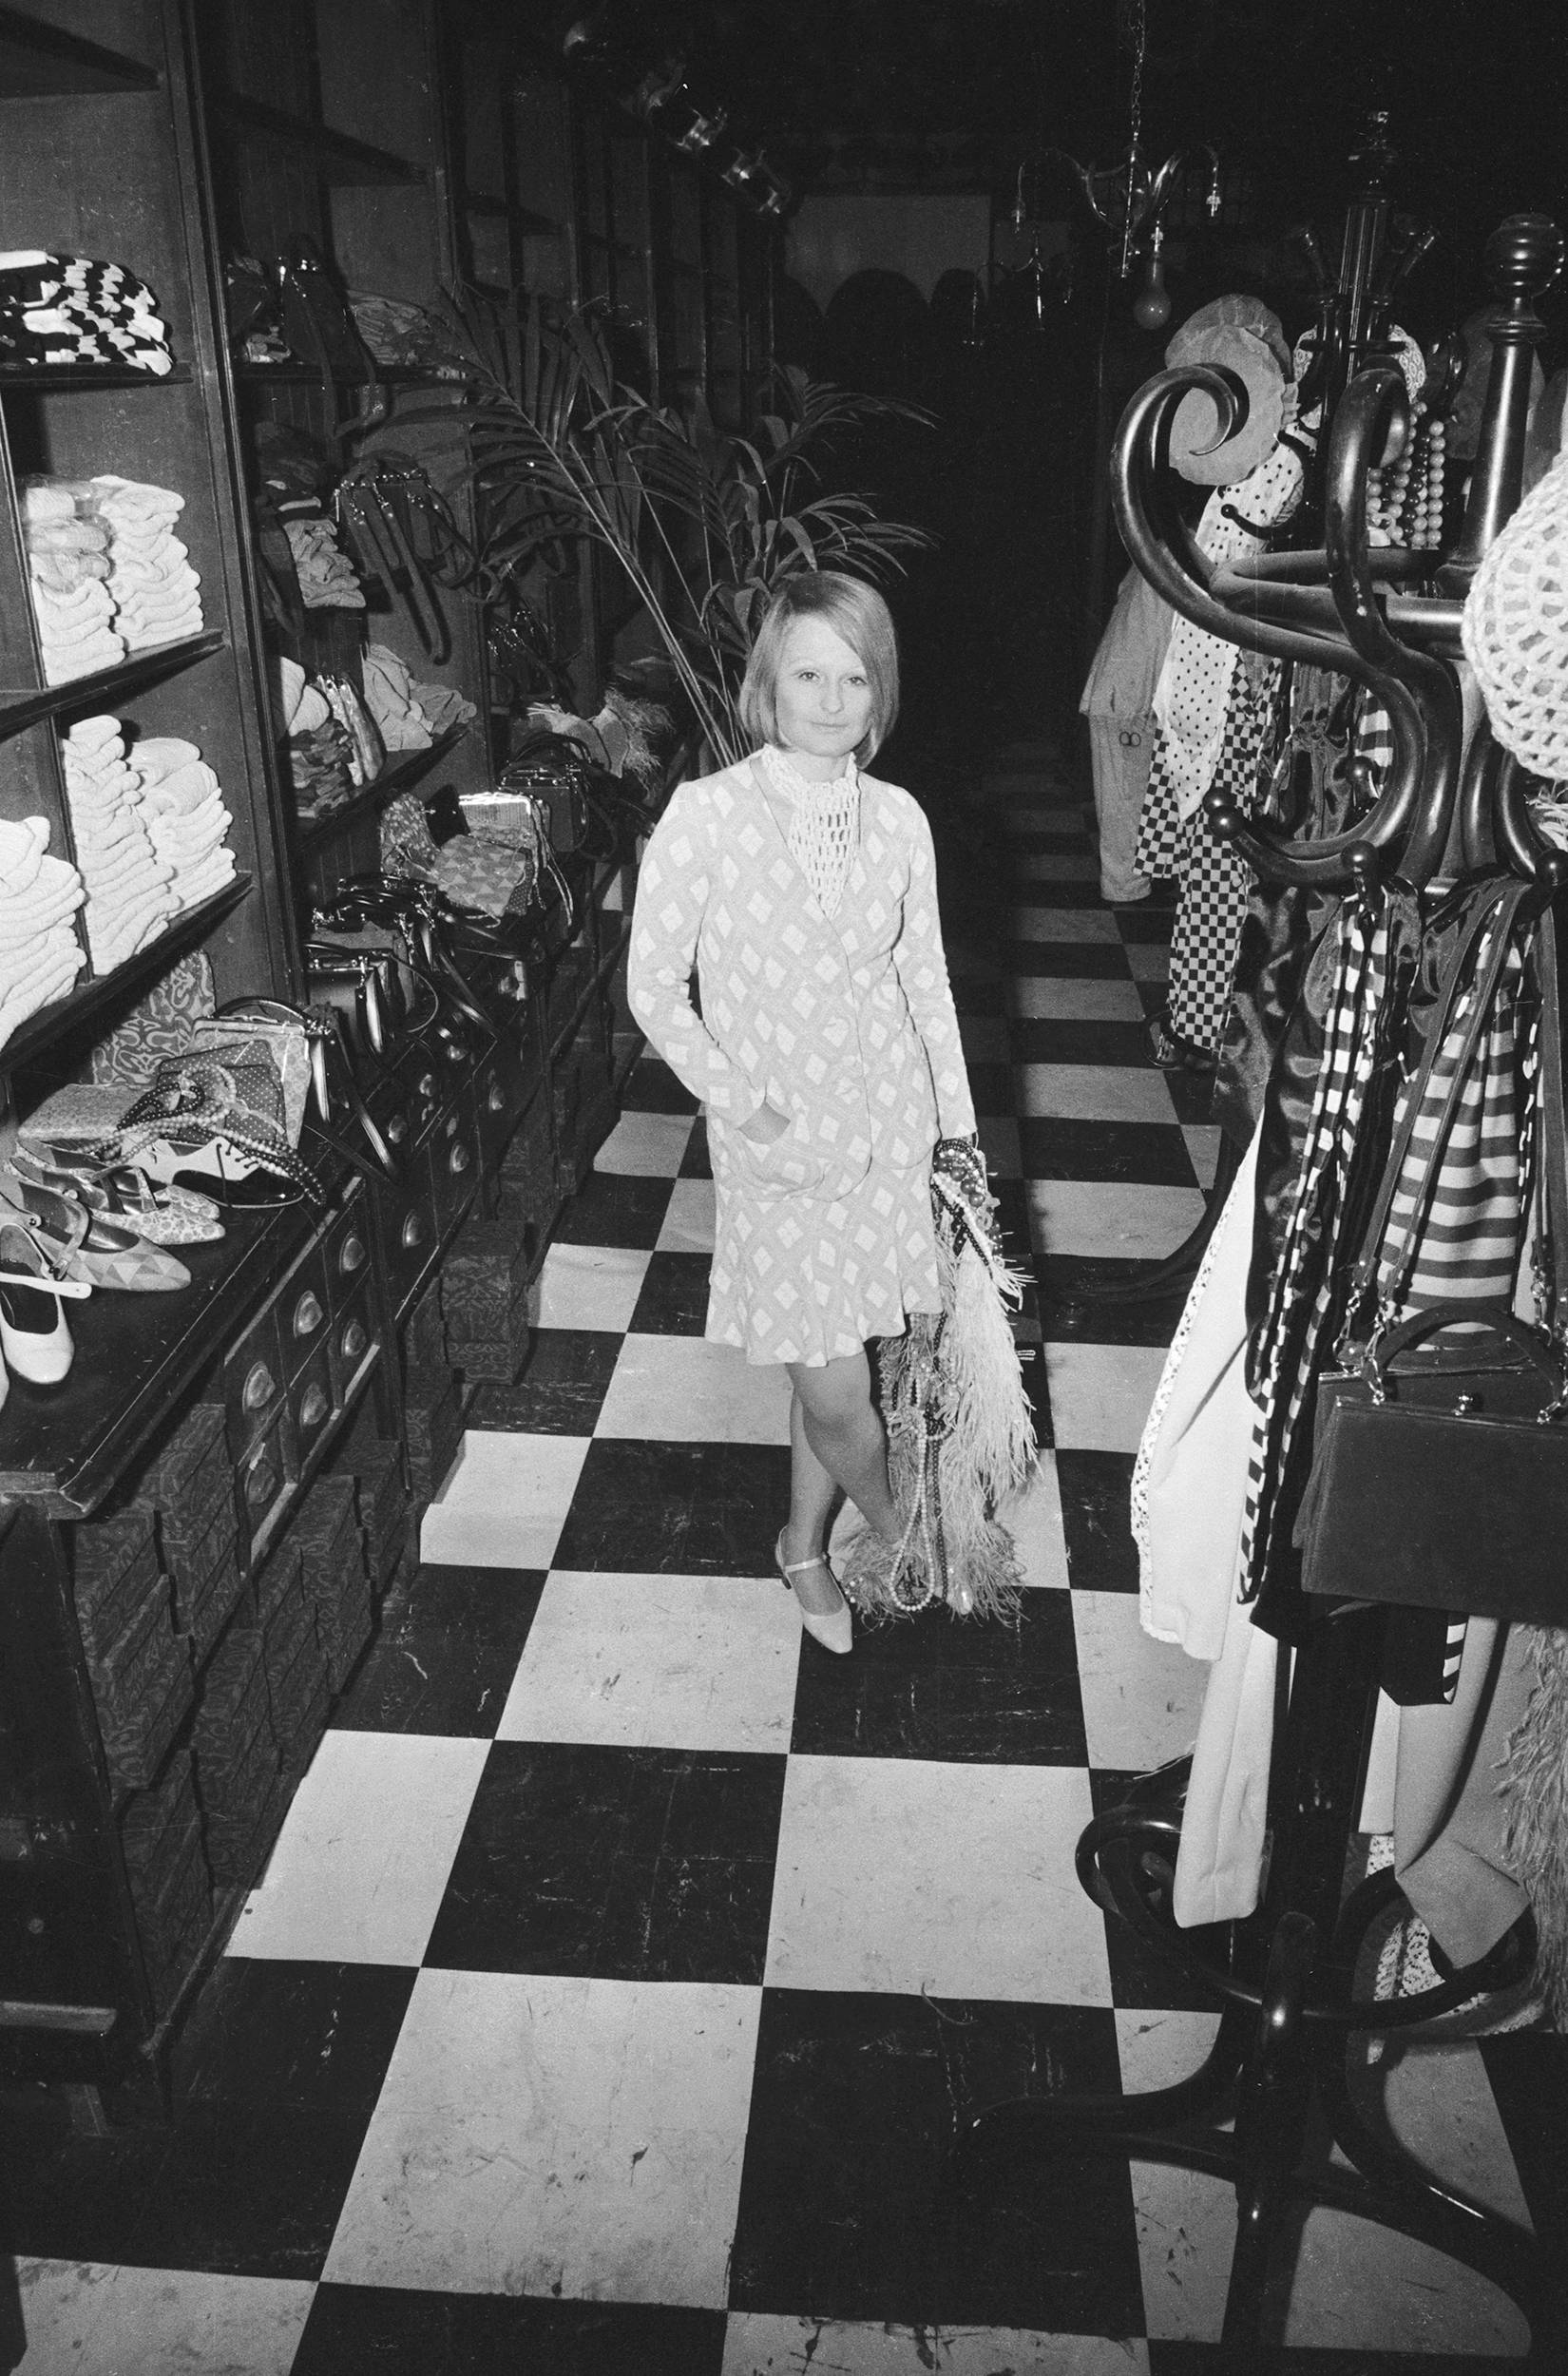 A estilista britânica proprietária da Boutique Biba, Barbara Hulanicki, em sua nova loja.